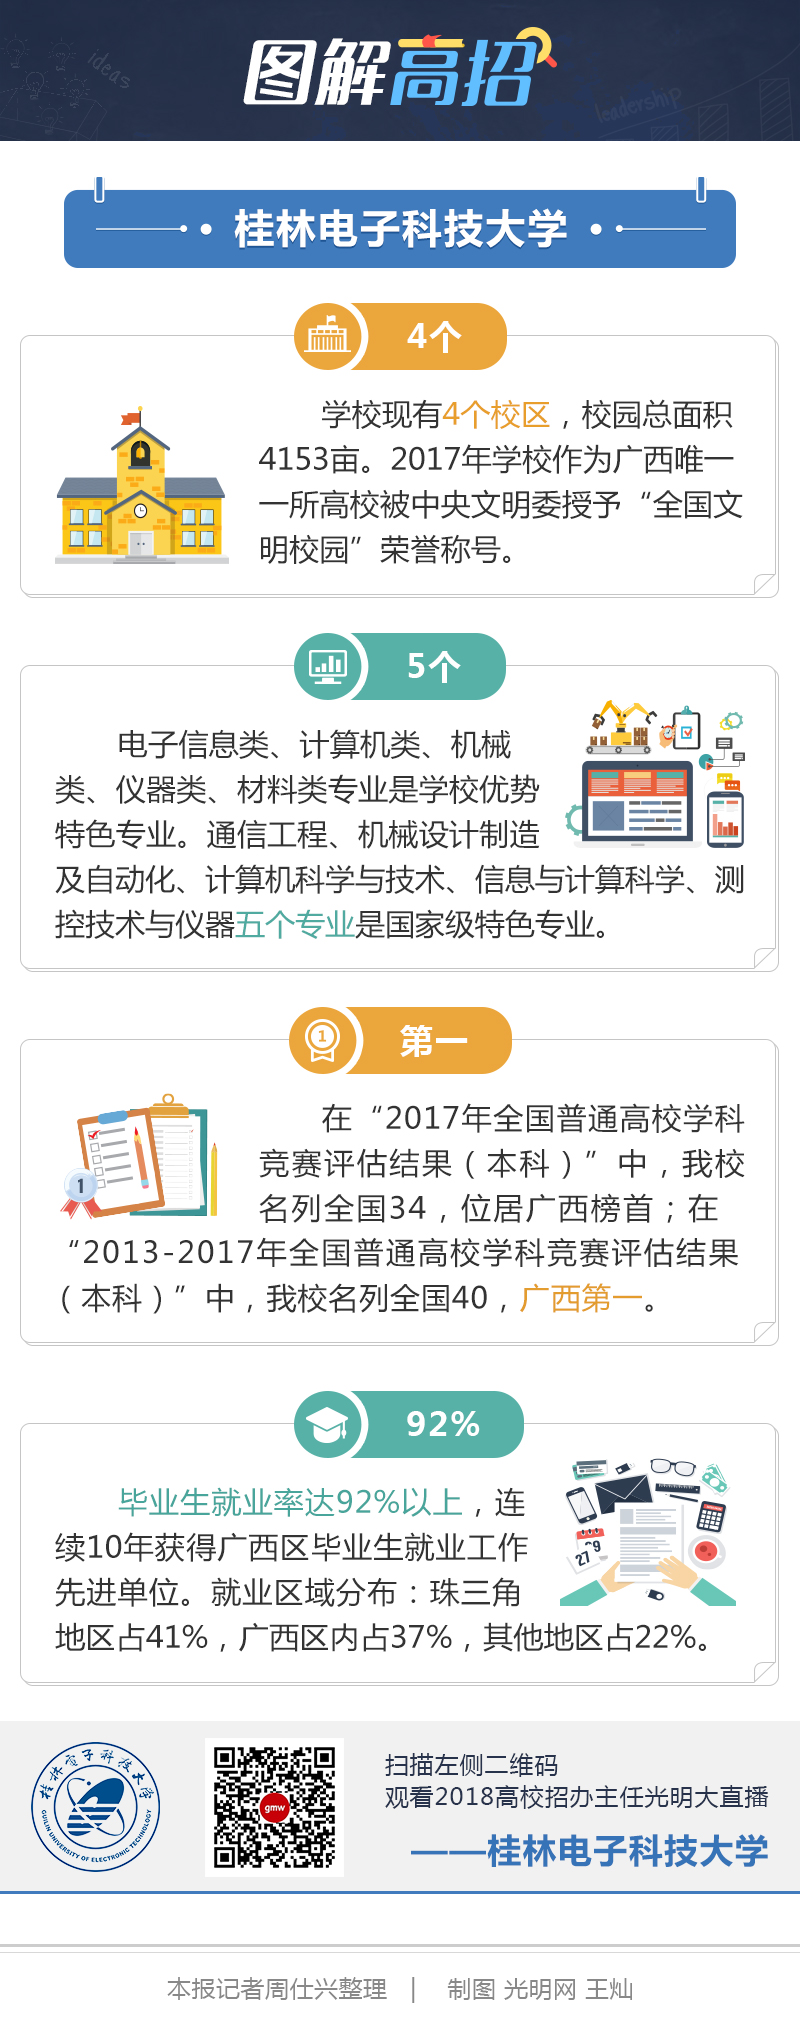 图解高招-桂林电子科技大学